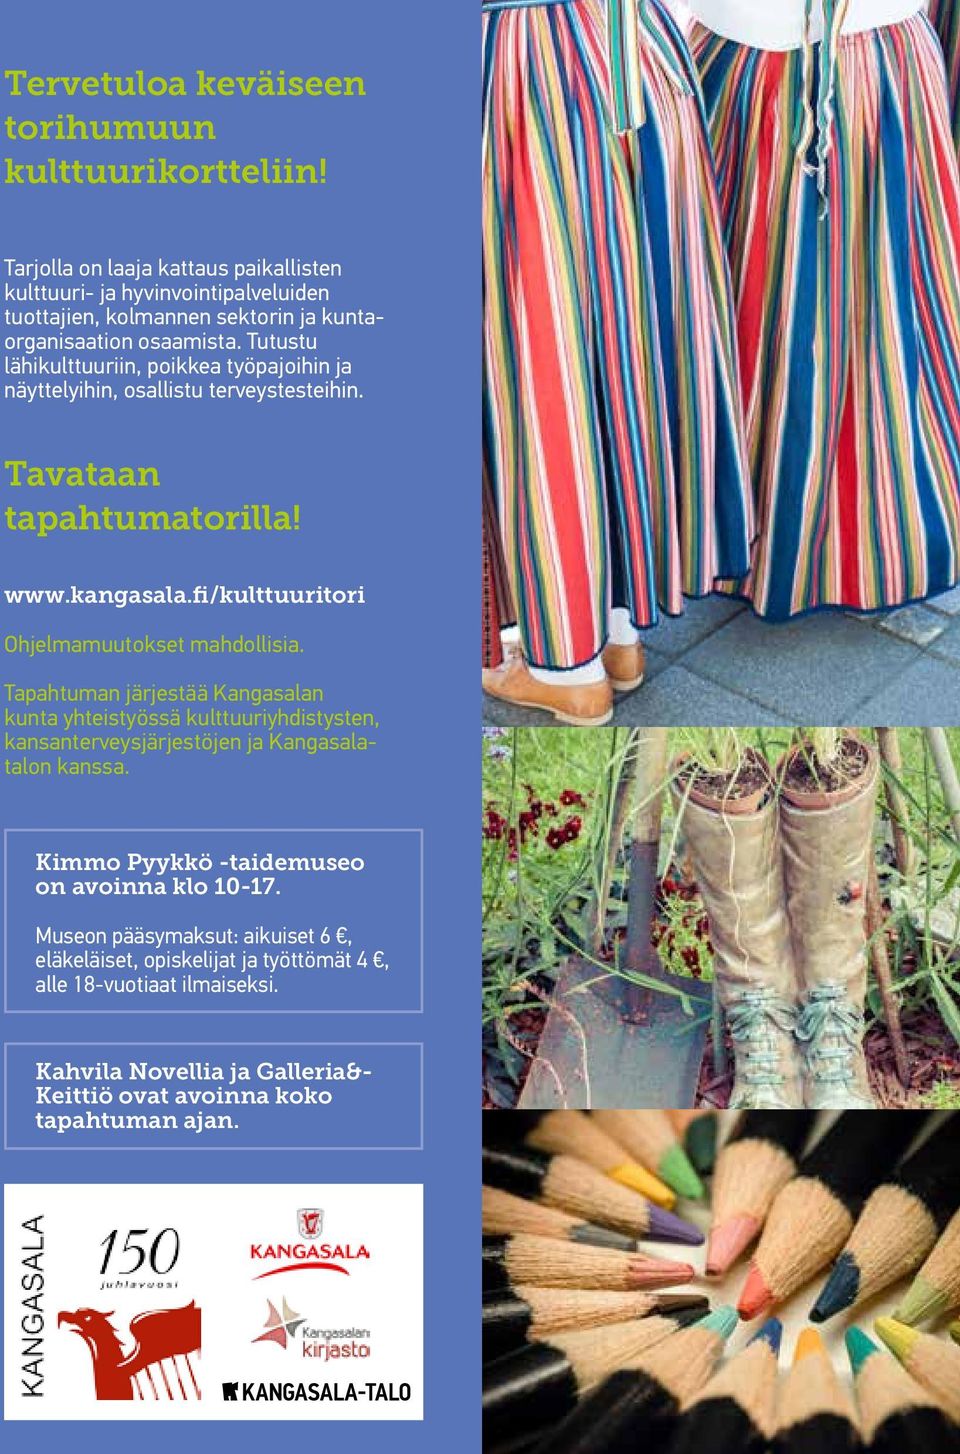 Tutustu lähikulttuuriin, poikkea työpajoihin ja näyttelyihin, osallistu terveystesteihin. Tavataan tapahtumatorilla! www.kangasala.fi/kulttuuritori Ohjelmamuutokset mahdollisia.